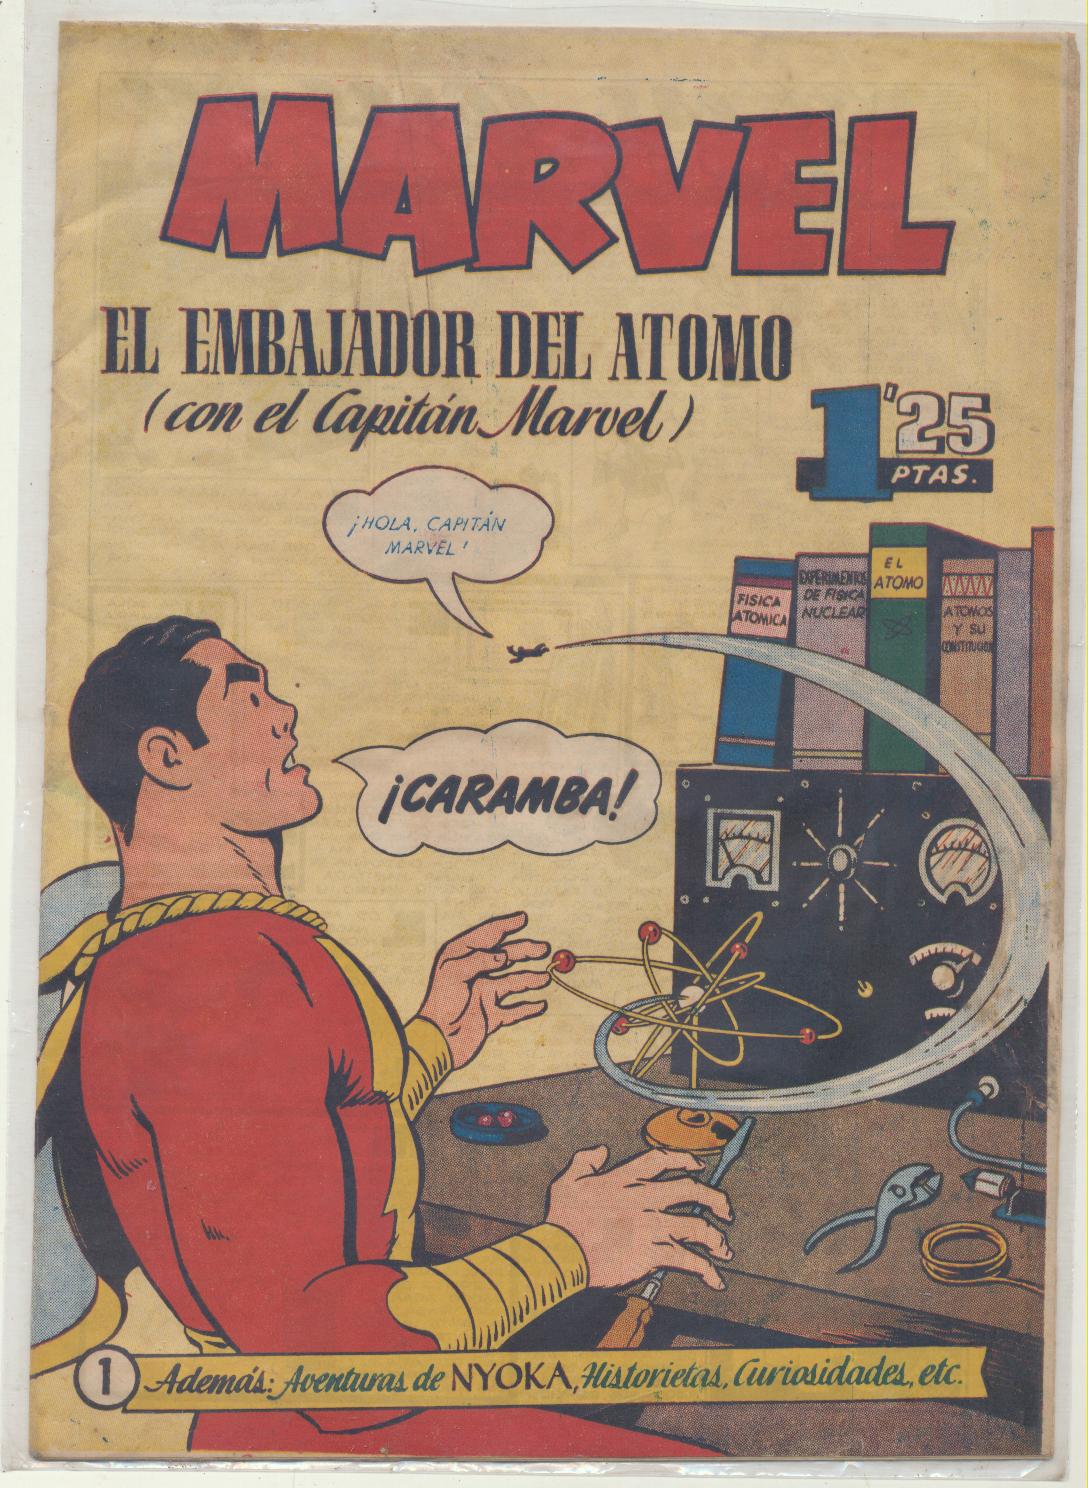 El Capitán Marvel. Hispano Americana 1949. Nº 1 (El Embajador del Átomo)